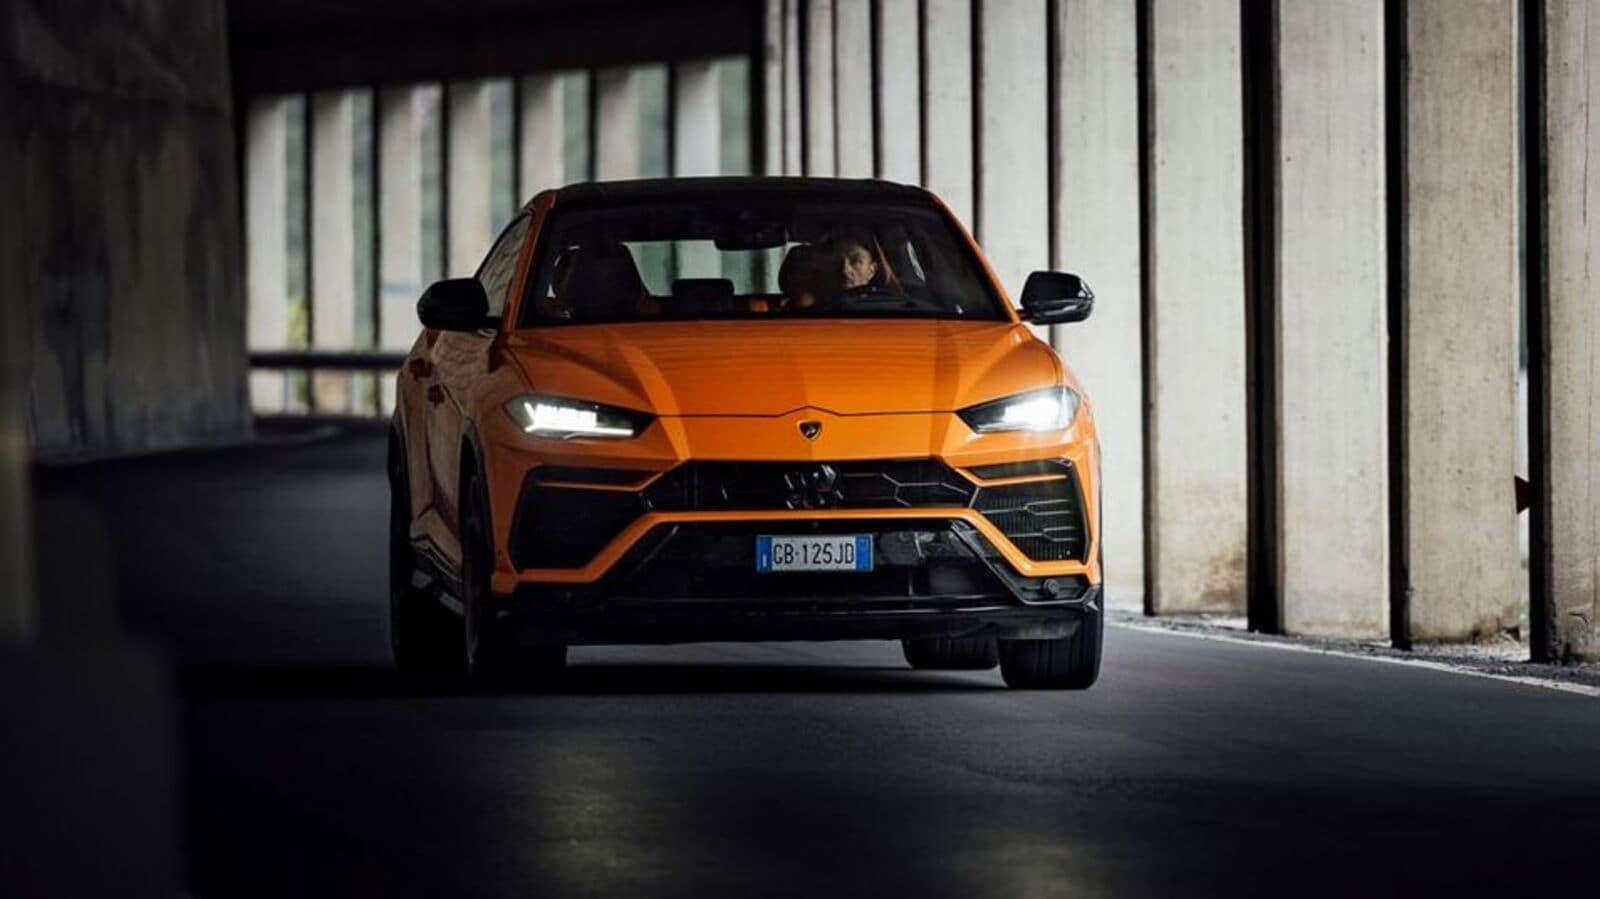 Lamborghini may bring electric version of Urus SUV: Report | Auto News